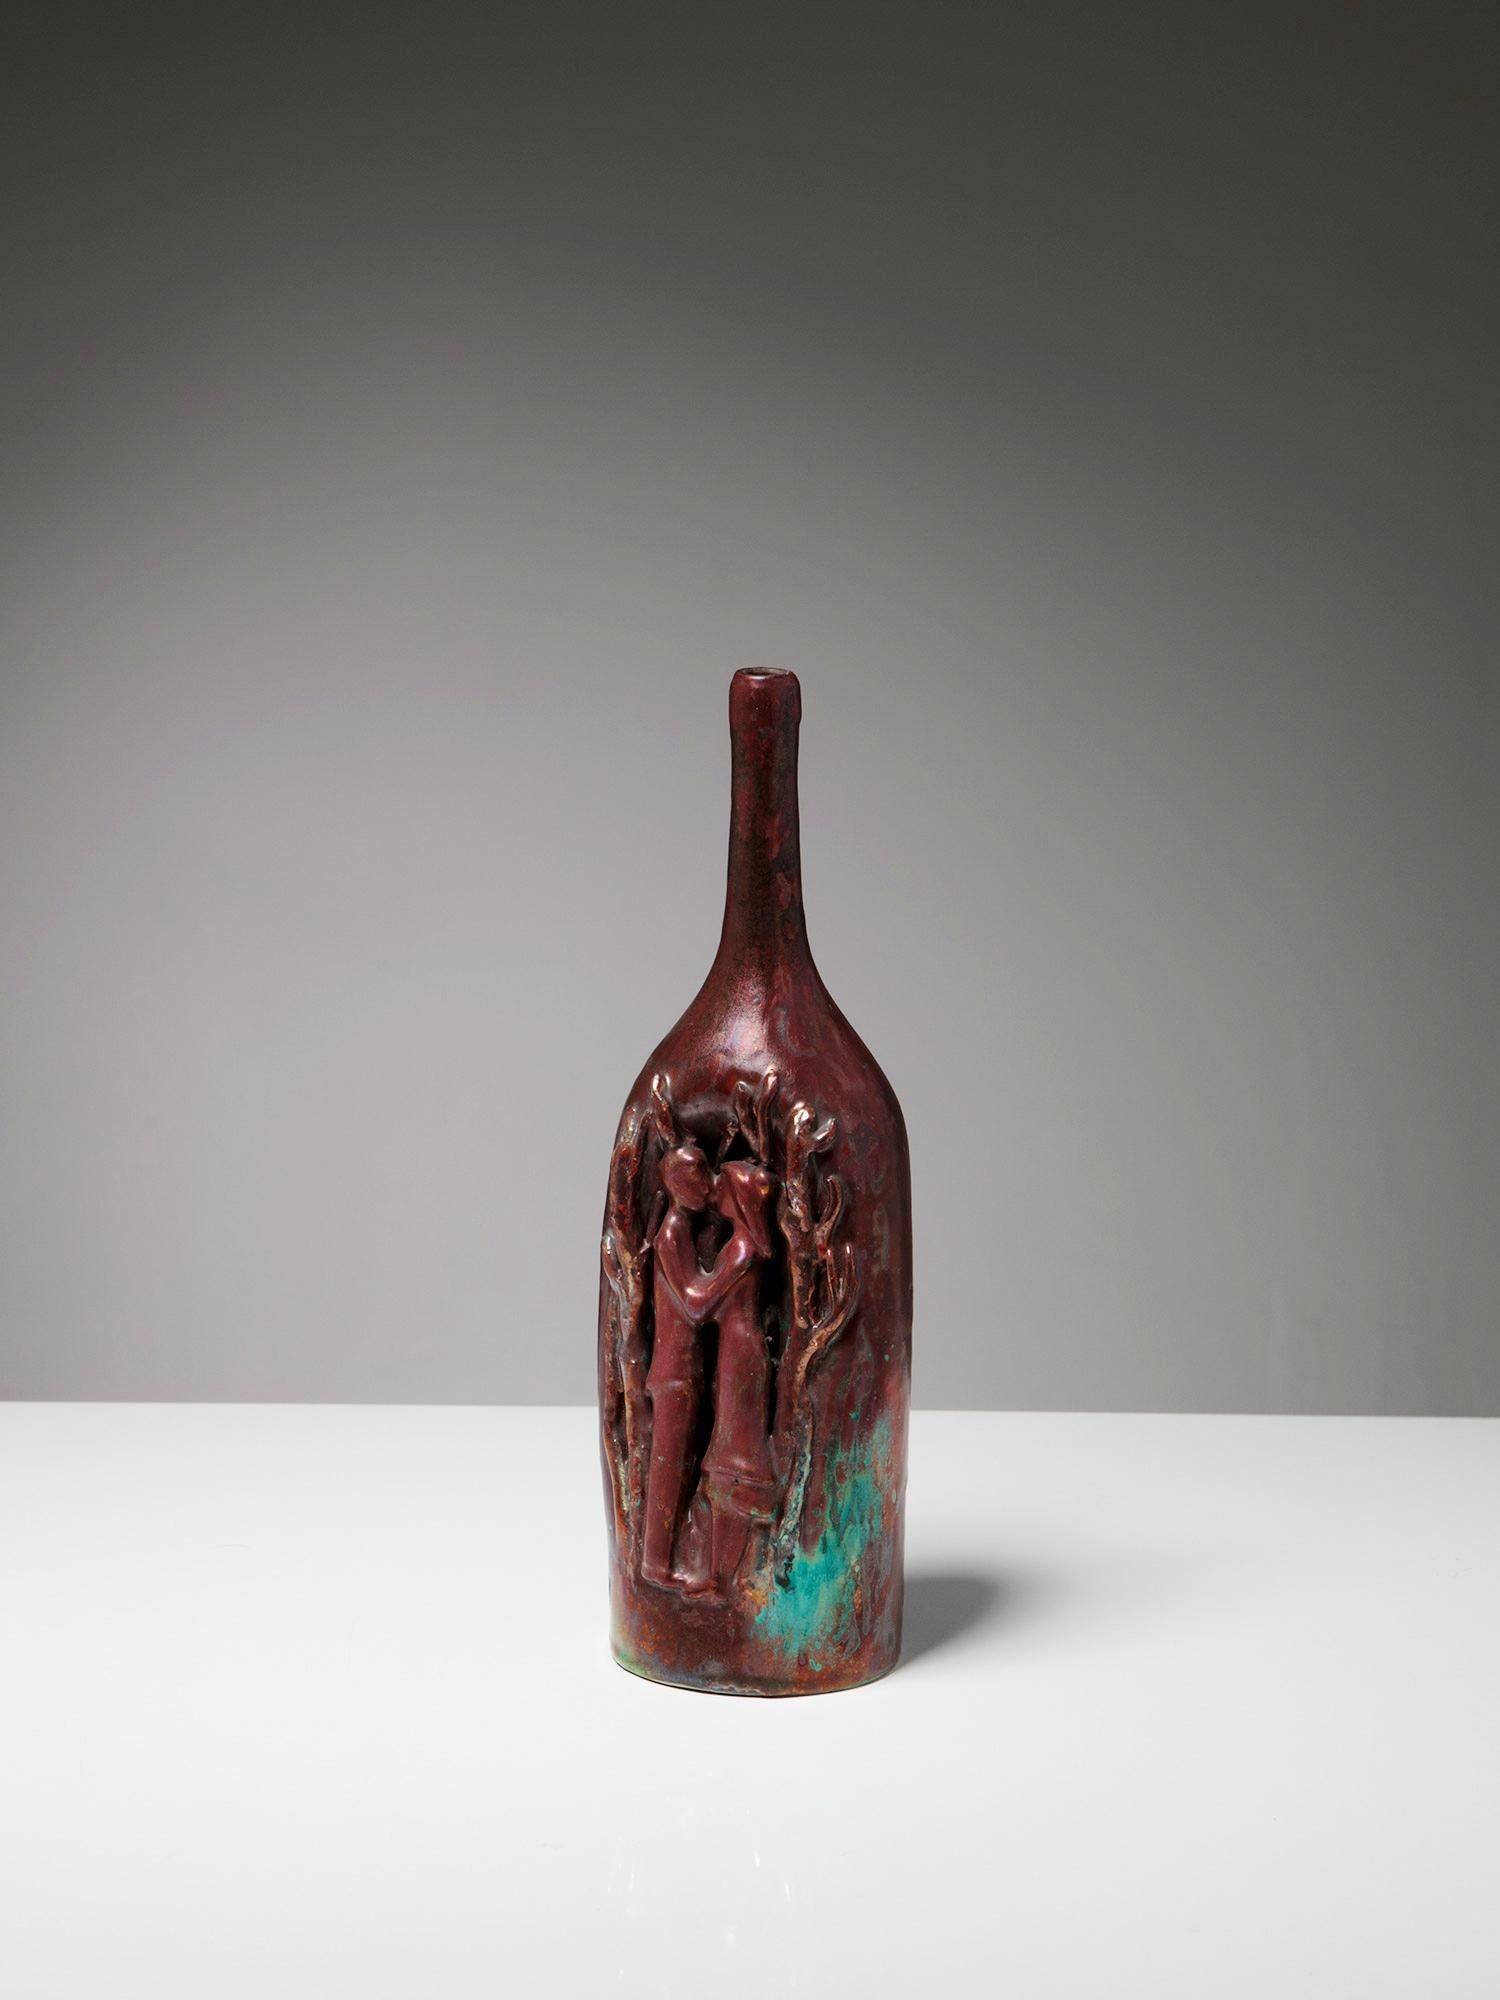 Rare bouteille en céramique de Domenico Minganti pour la Cooperativa Ceramica d'Imola.
Une production des années 1950 qui a également inspiré les bouteilles de Gio Ponti pour le même fabricant.